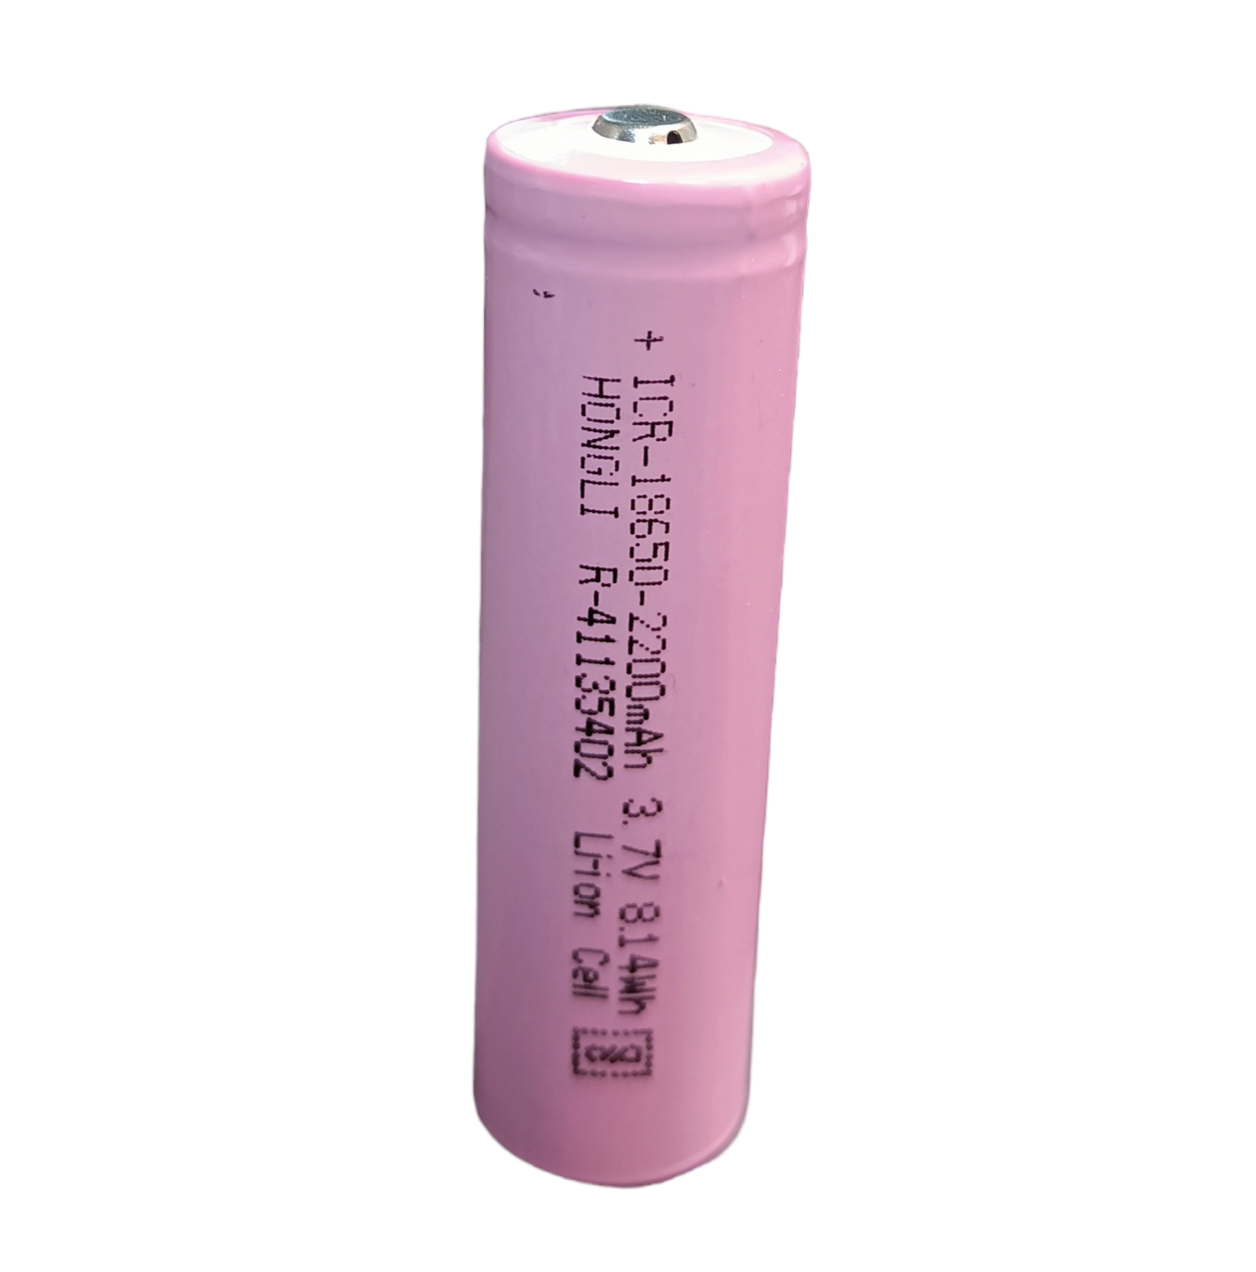 Rechargeable battery 18650 Li-Ion 2200 mAh 3.7V